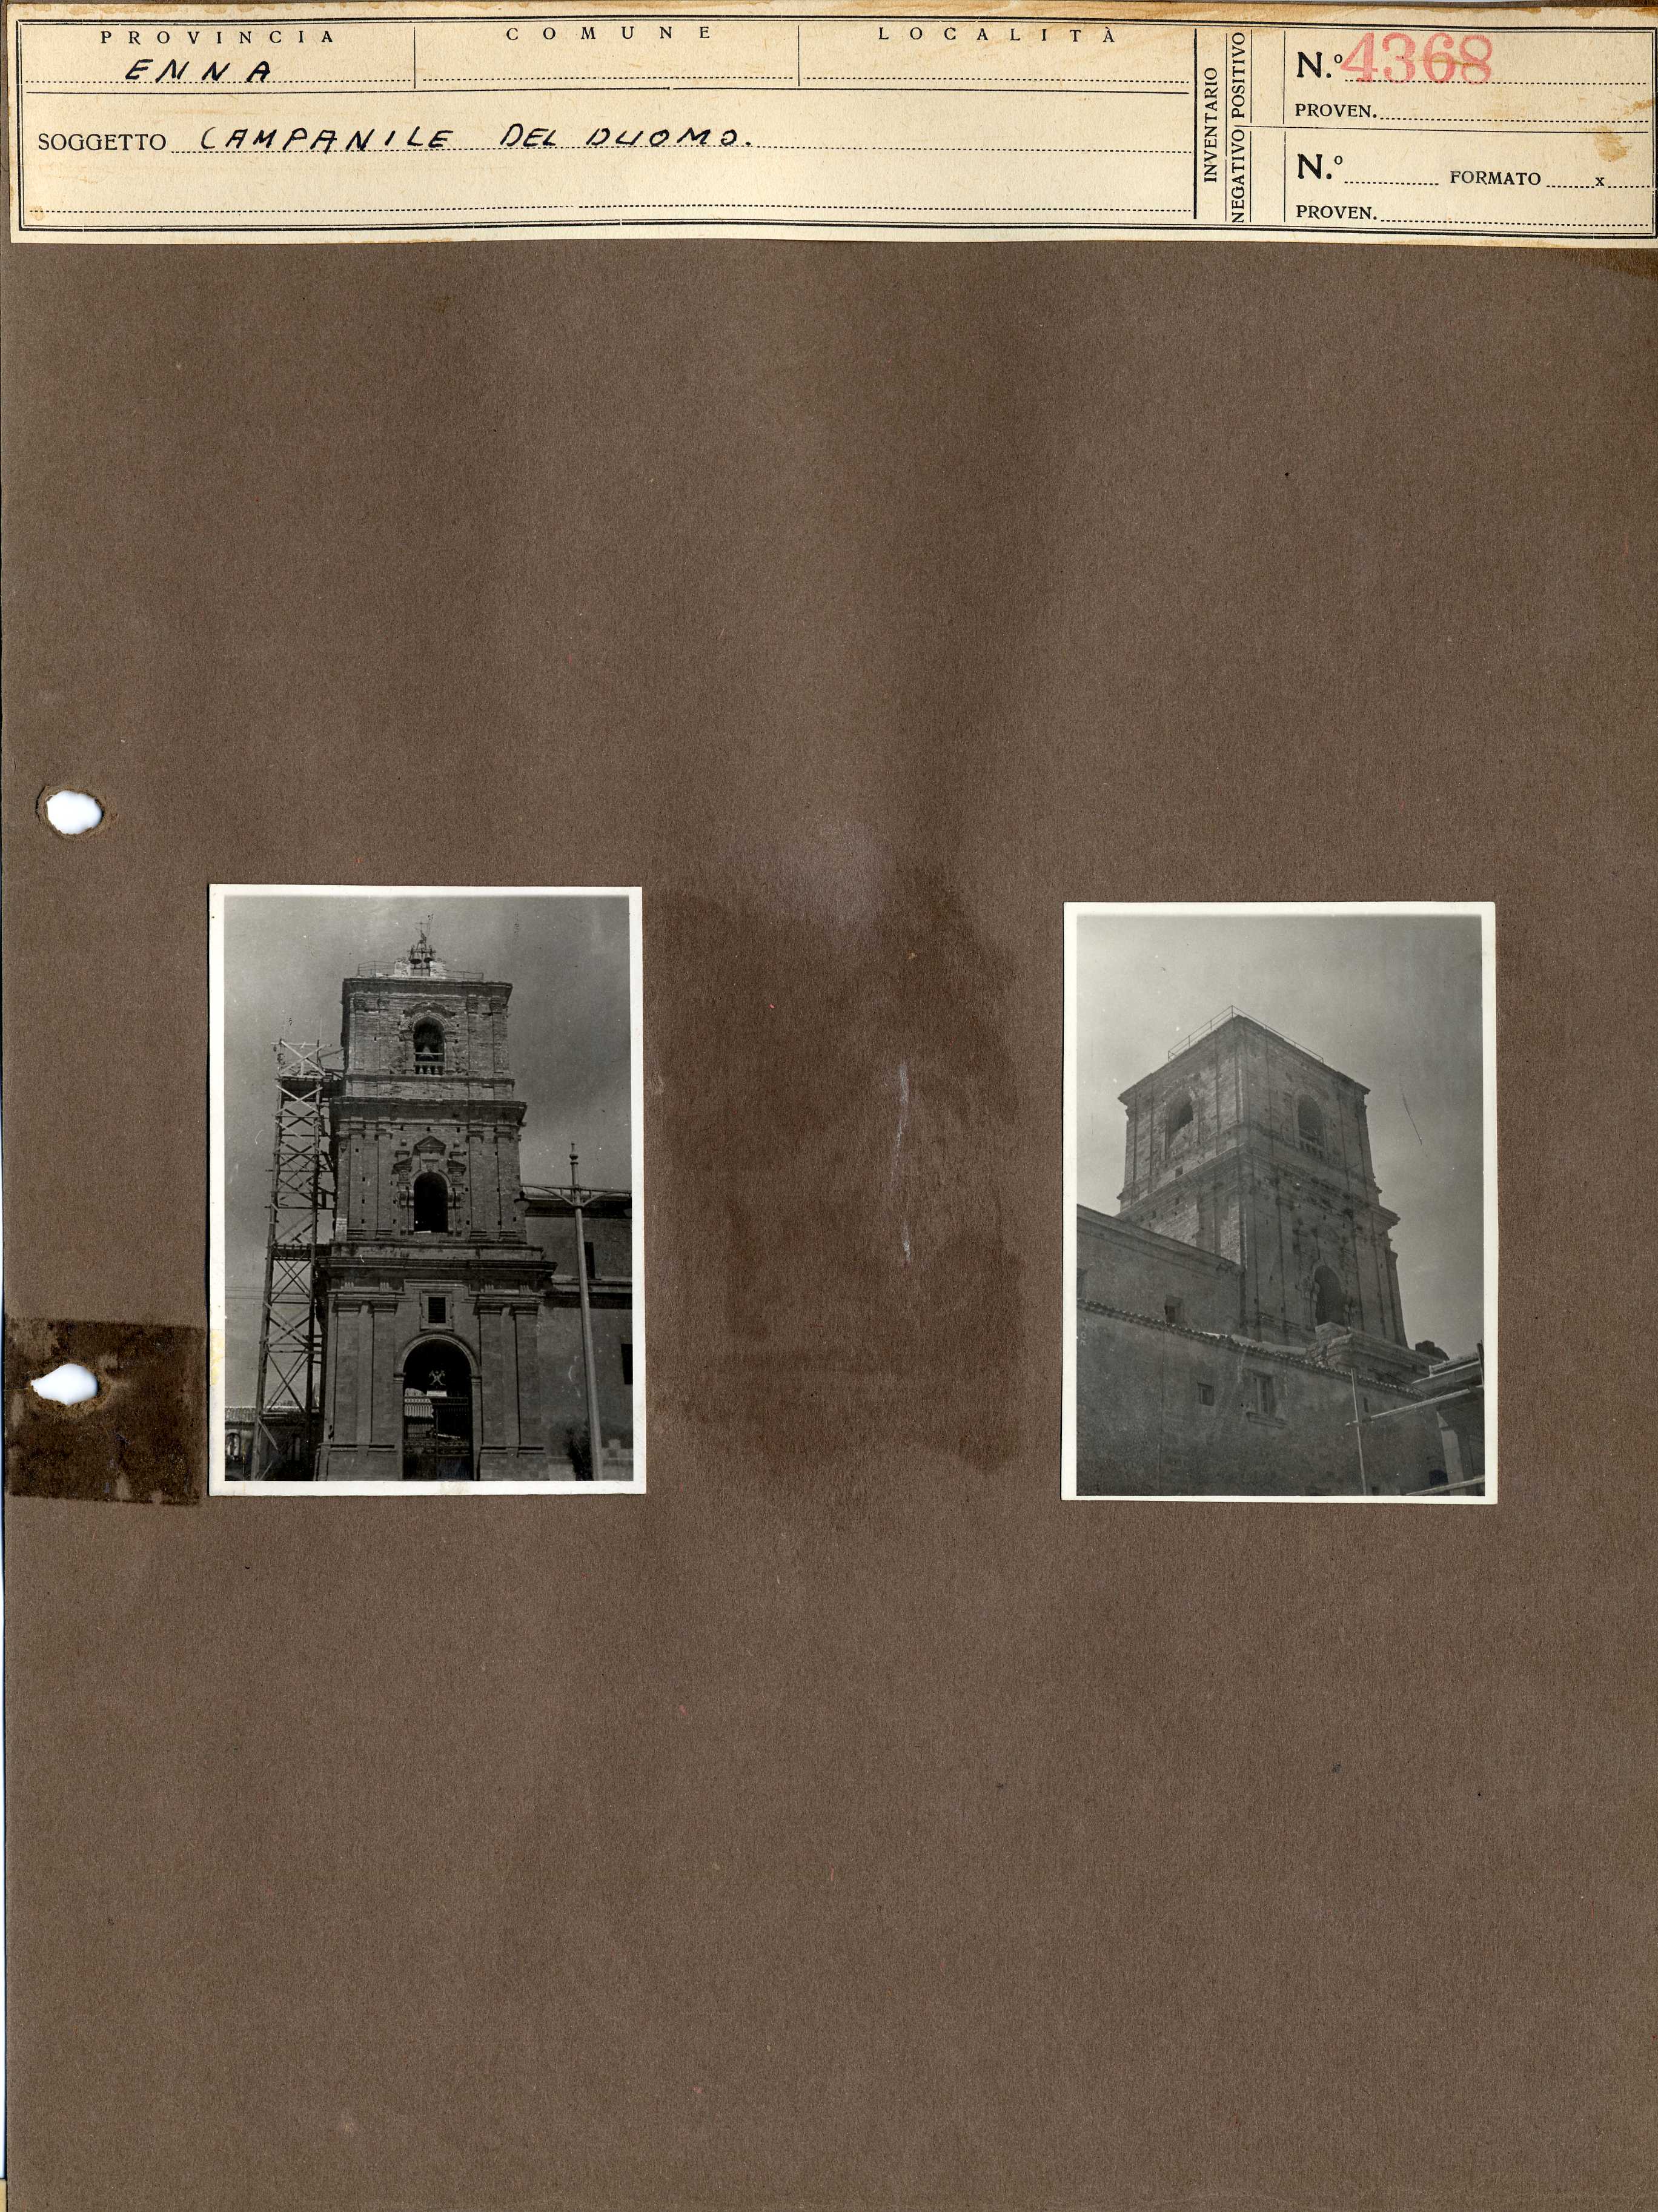 Sicilia - Enna – Architettura religiosa - Duomo - Campanili (positivo, elemento-parte componente, scheda di supporto) di Anonimo <1945 - 1955> (metà XX)